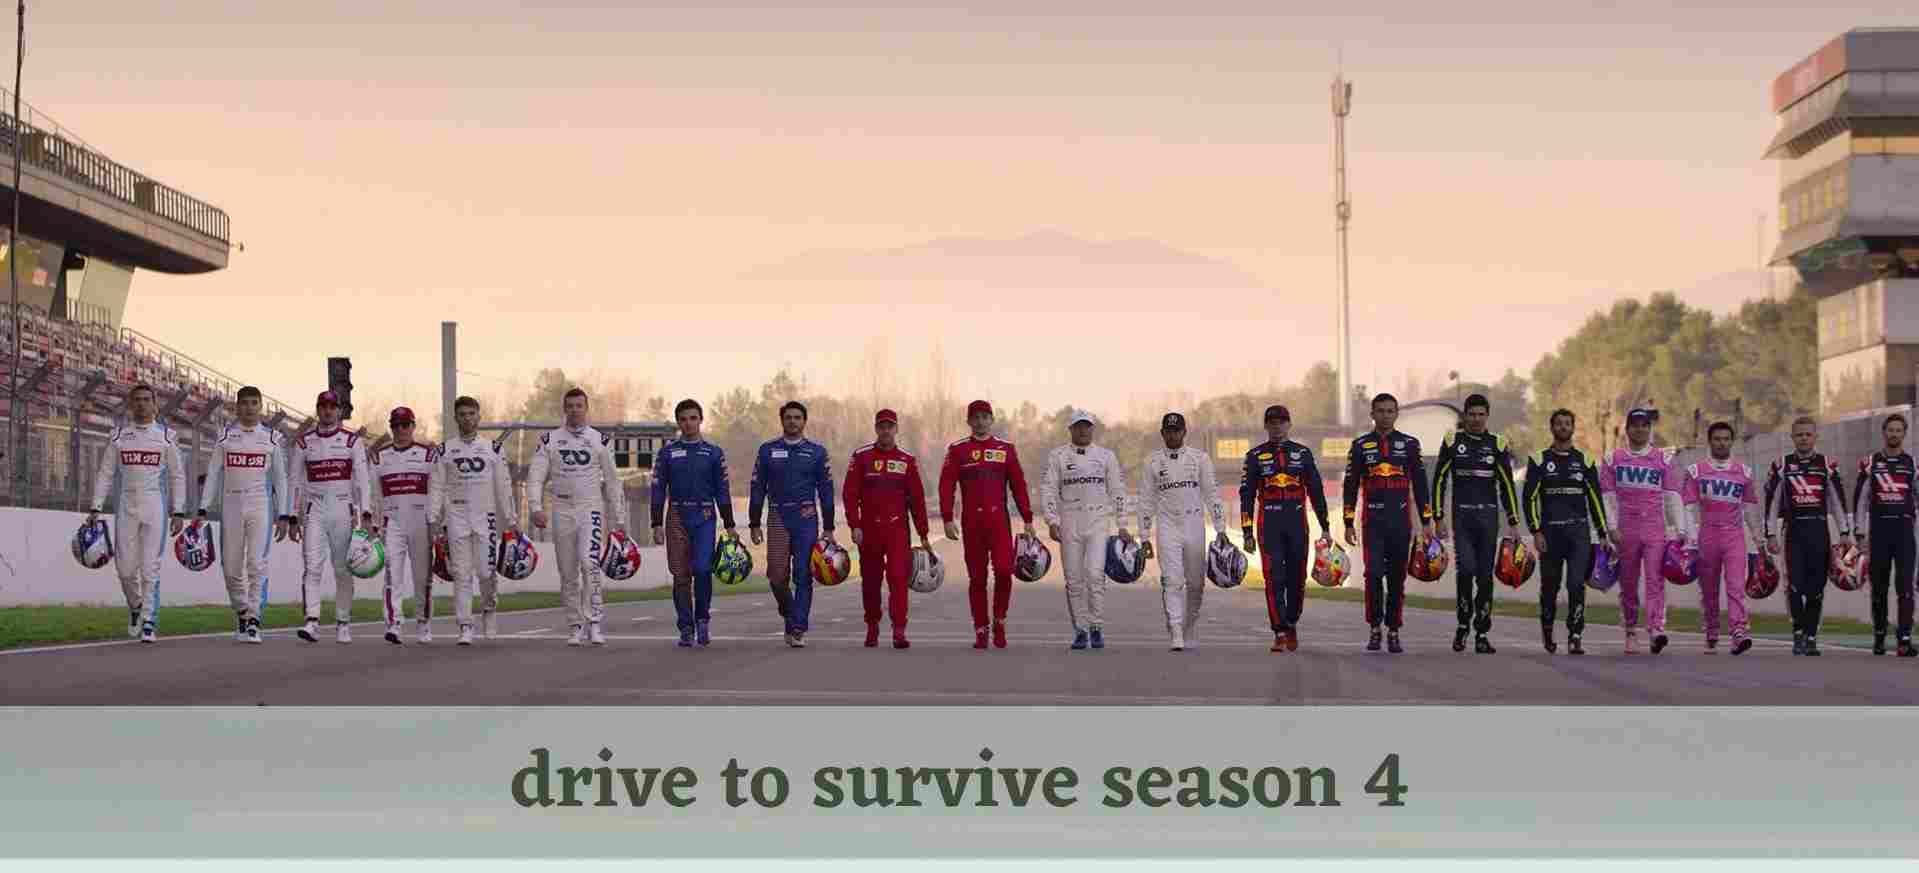 drive to survive season 4